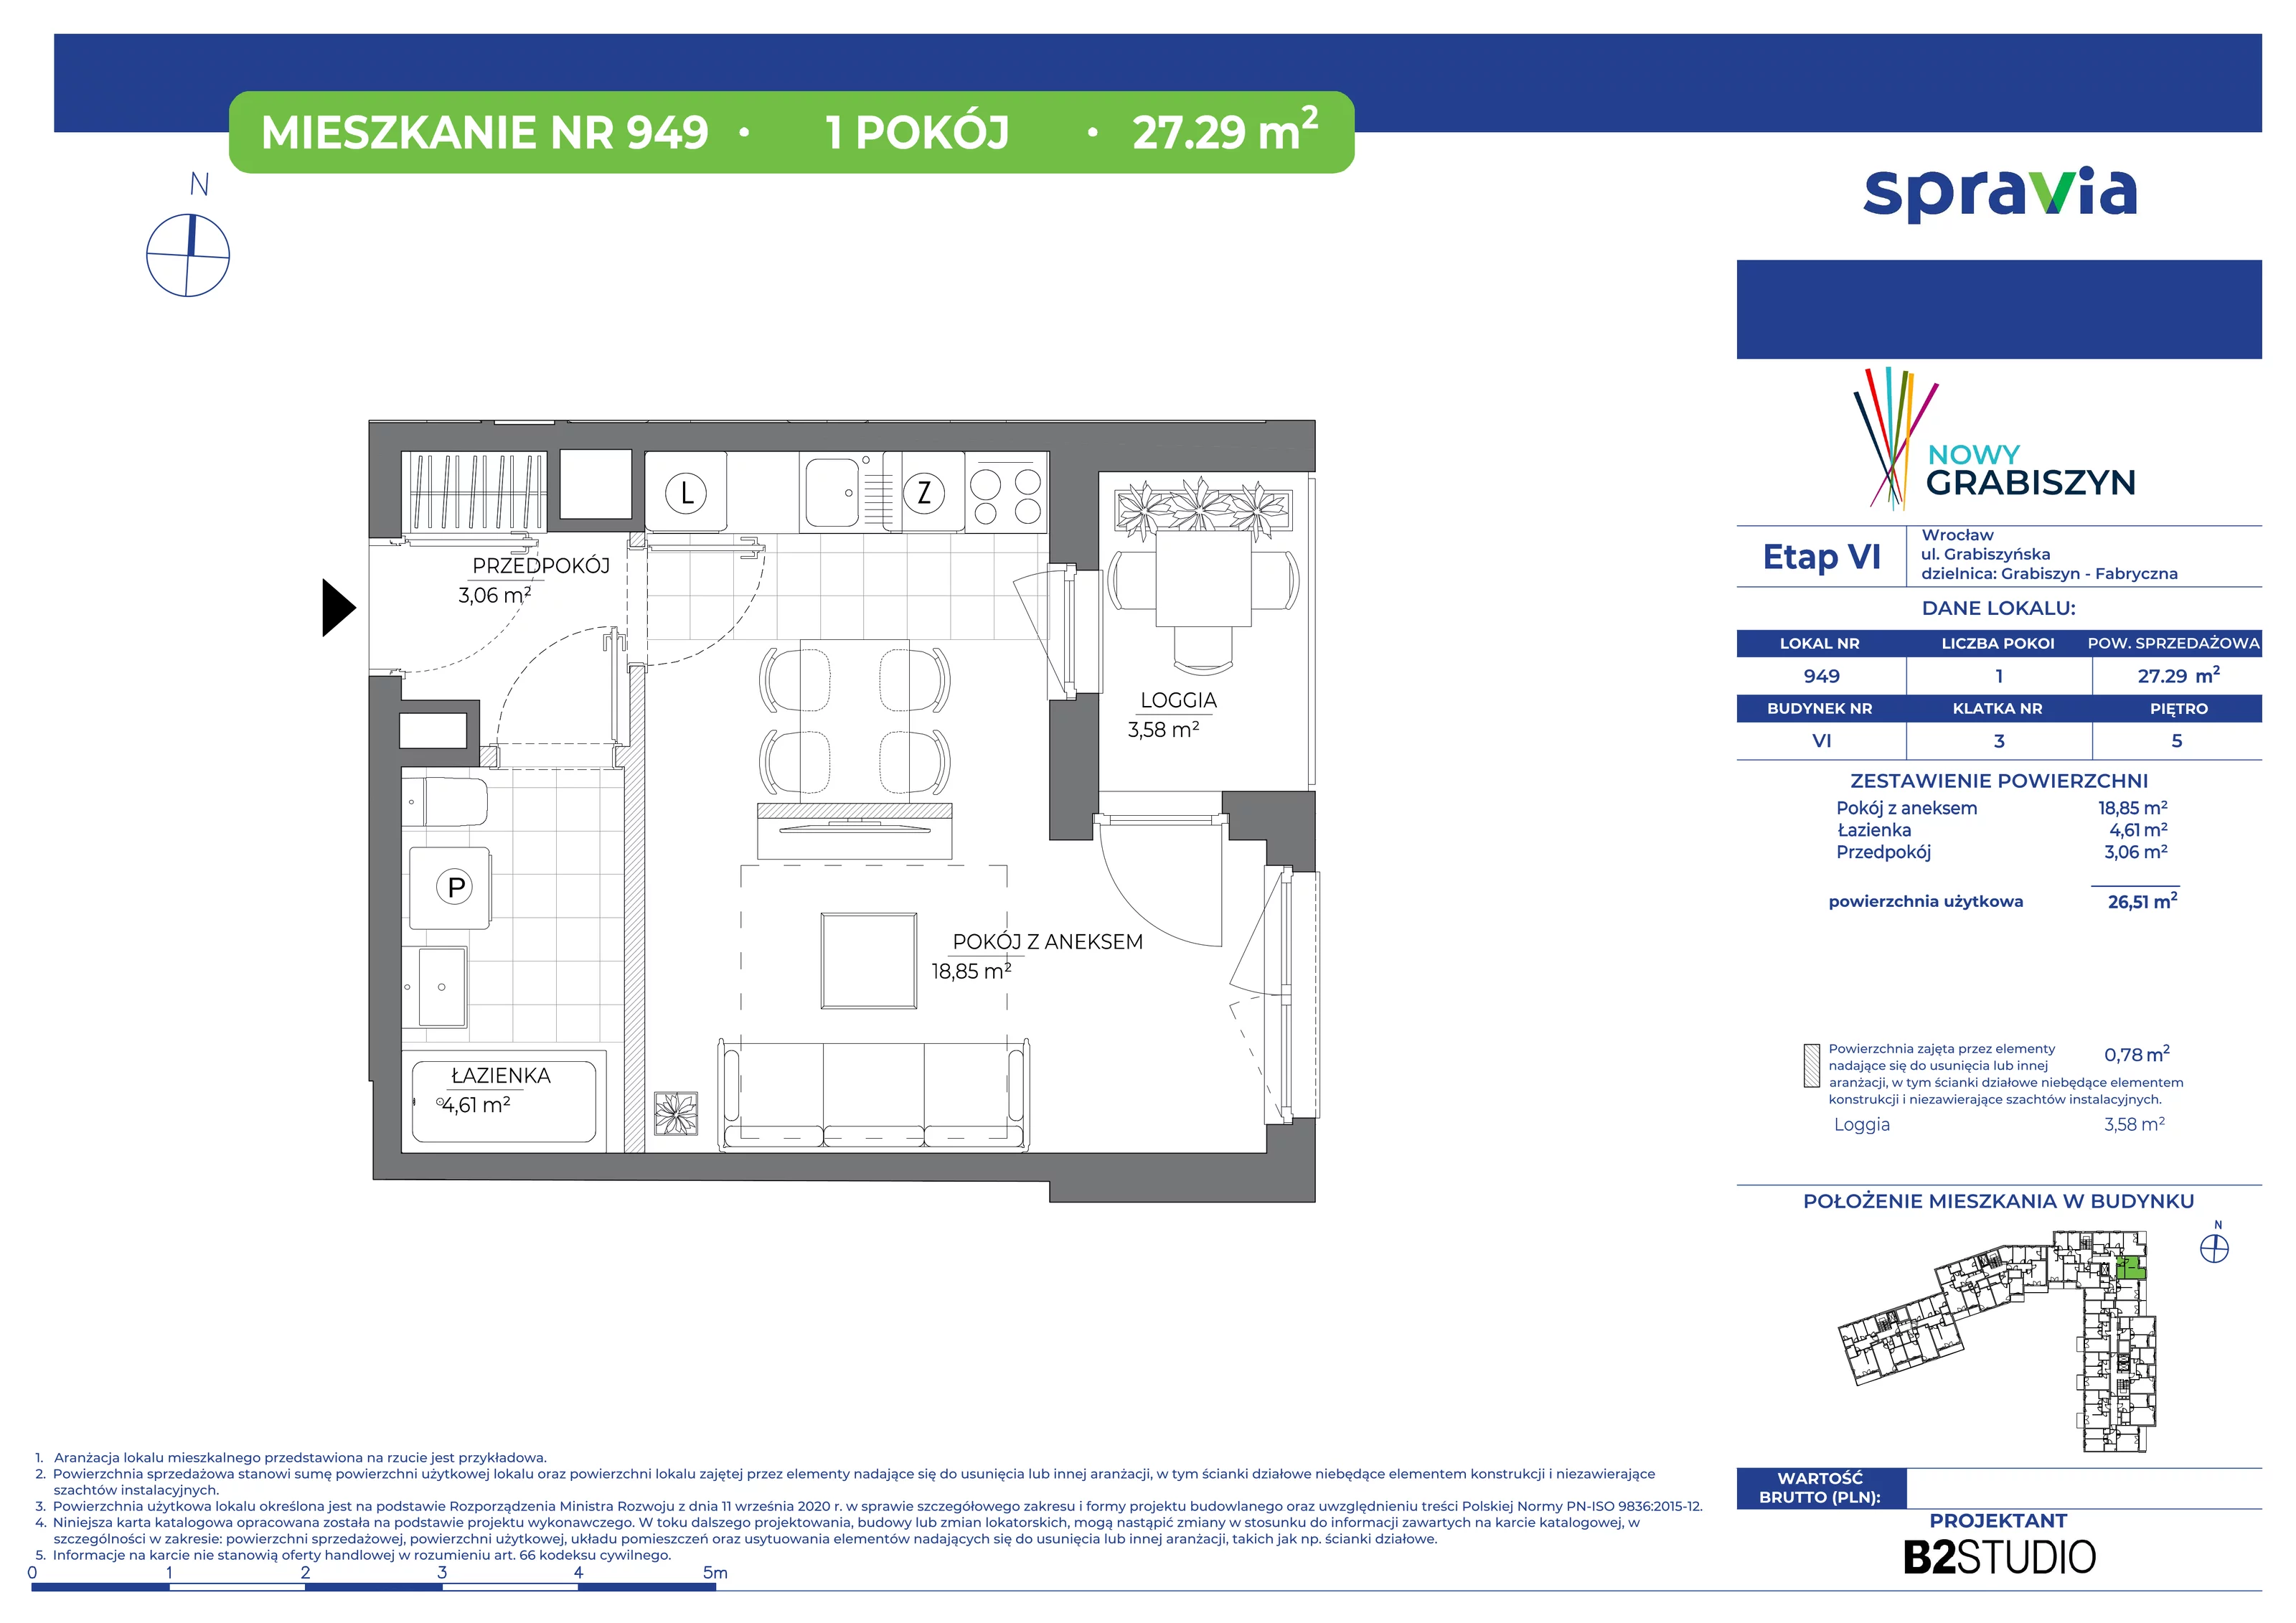 Mieszkanie 27,29 m², piętro 5, oferta nr 949, Nowy Grabiszyn 6, Wrocław, Grabiszyn-Grabiszynek, Fabryczna, ul. Miedziana